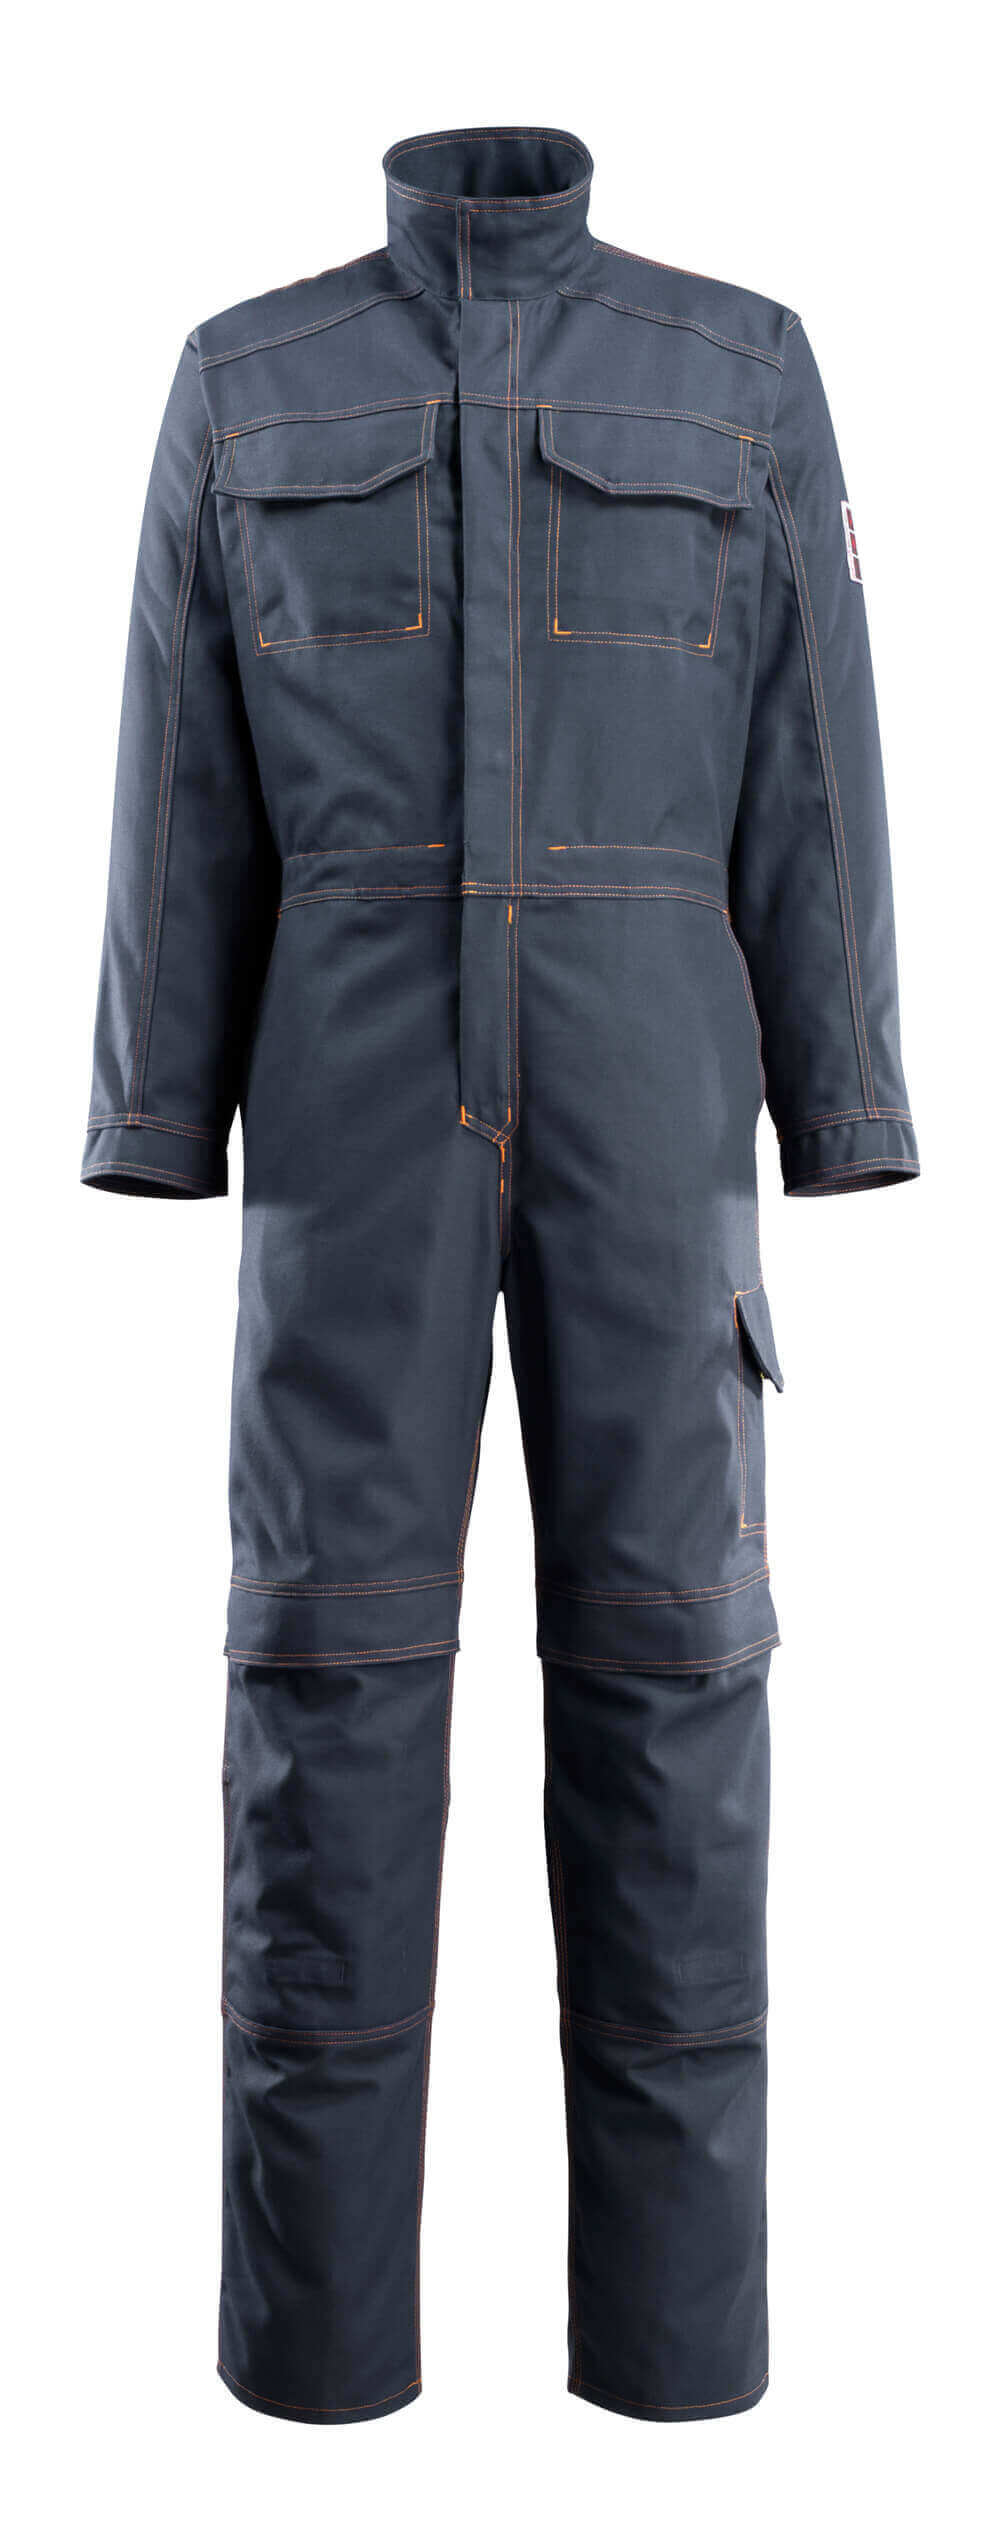 06619-135-010 Boilersuit with kneepad pockets - dark navy